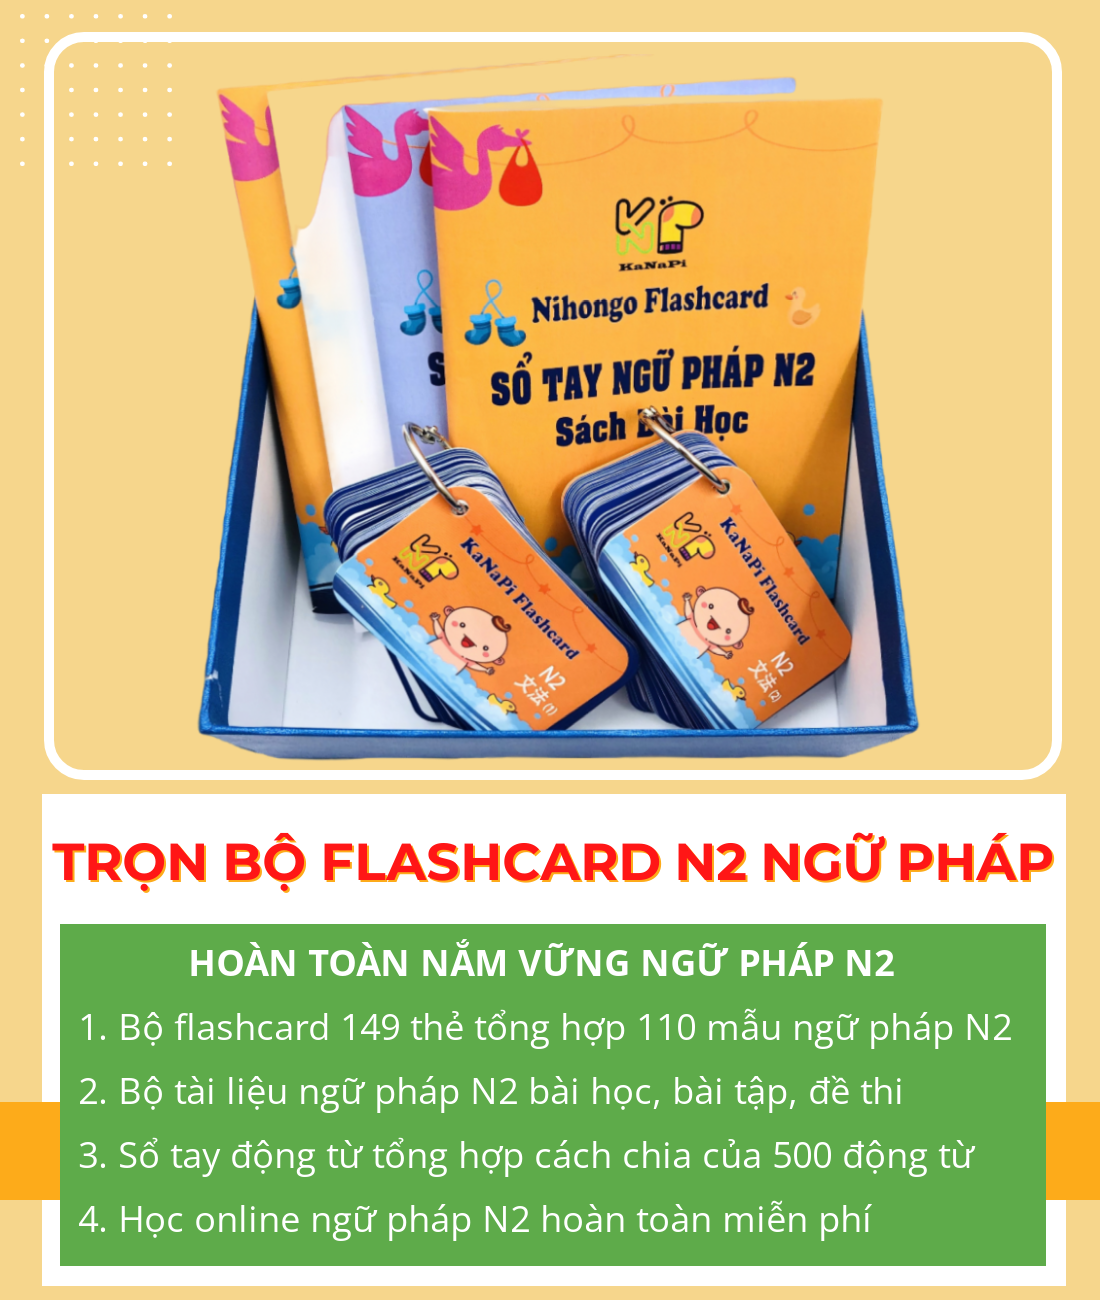 Lifestyle designTrọn Bộ Flashcards N2 Ngữ Pháp (Thẻ Flashcard + Bộ Sổ tay ngữ pháp N2 + Sổ tay động từ + Học Online) – Kanapi Flashcard